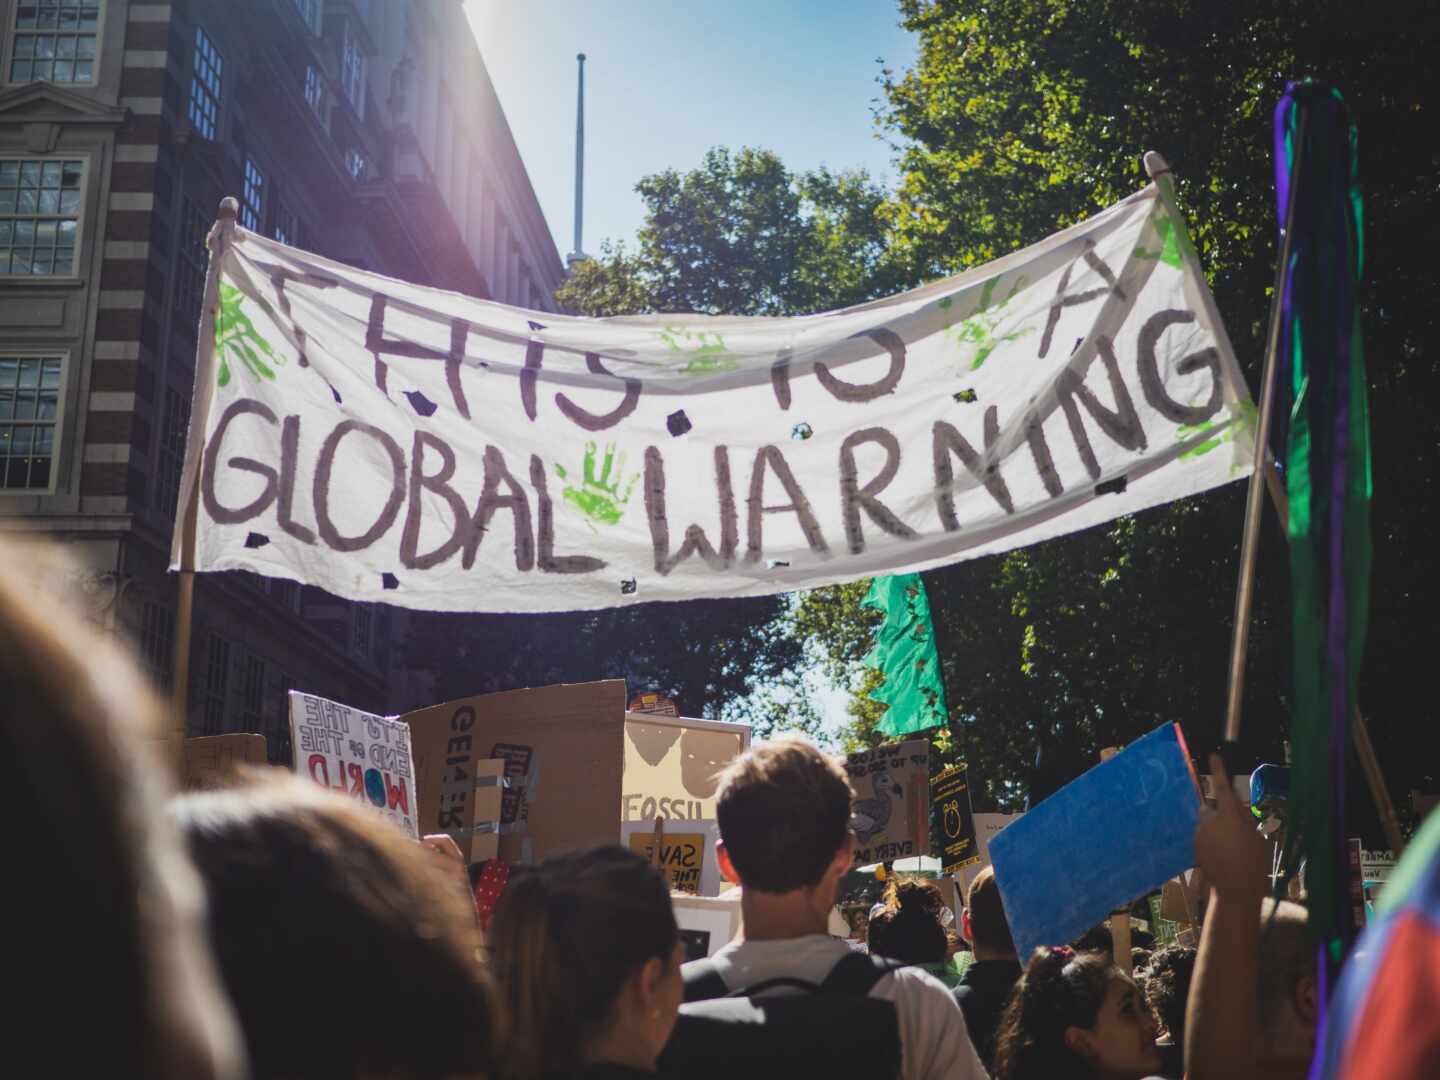 Pancarta que dice "This is a global warning" en una protesta contra el cambio climático en Londres, 2019